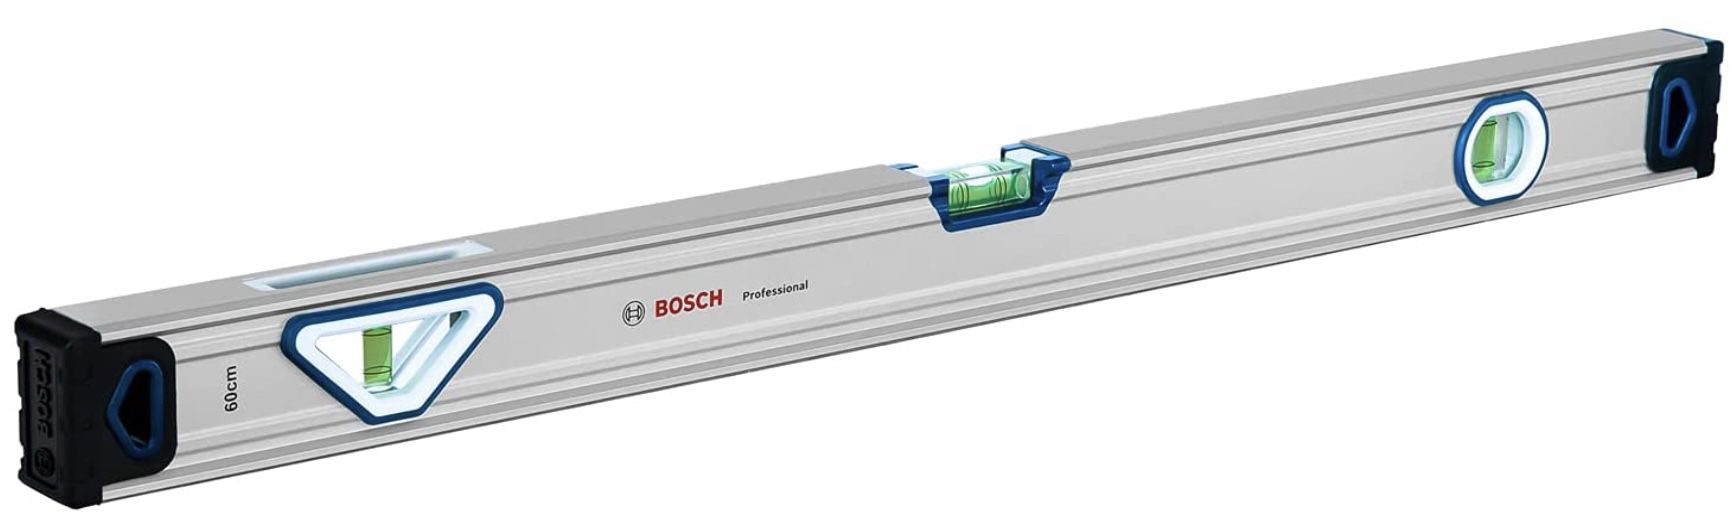 Bosch Professional 60cm Wasserwaage mit Aluminium Gehäuse & robusten Endkappen für 16,91€ (statt 29€)